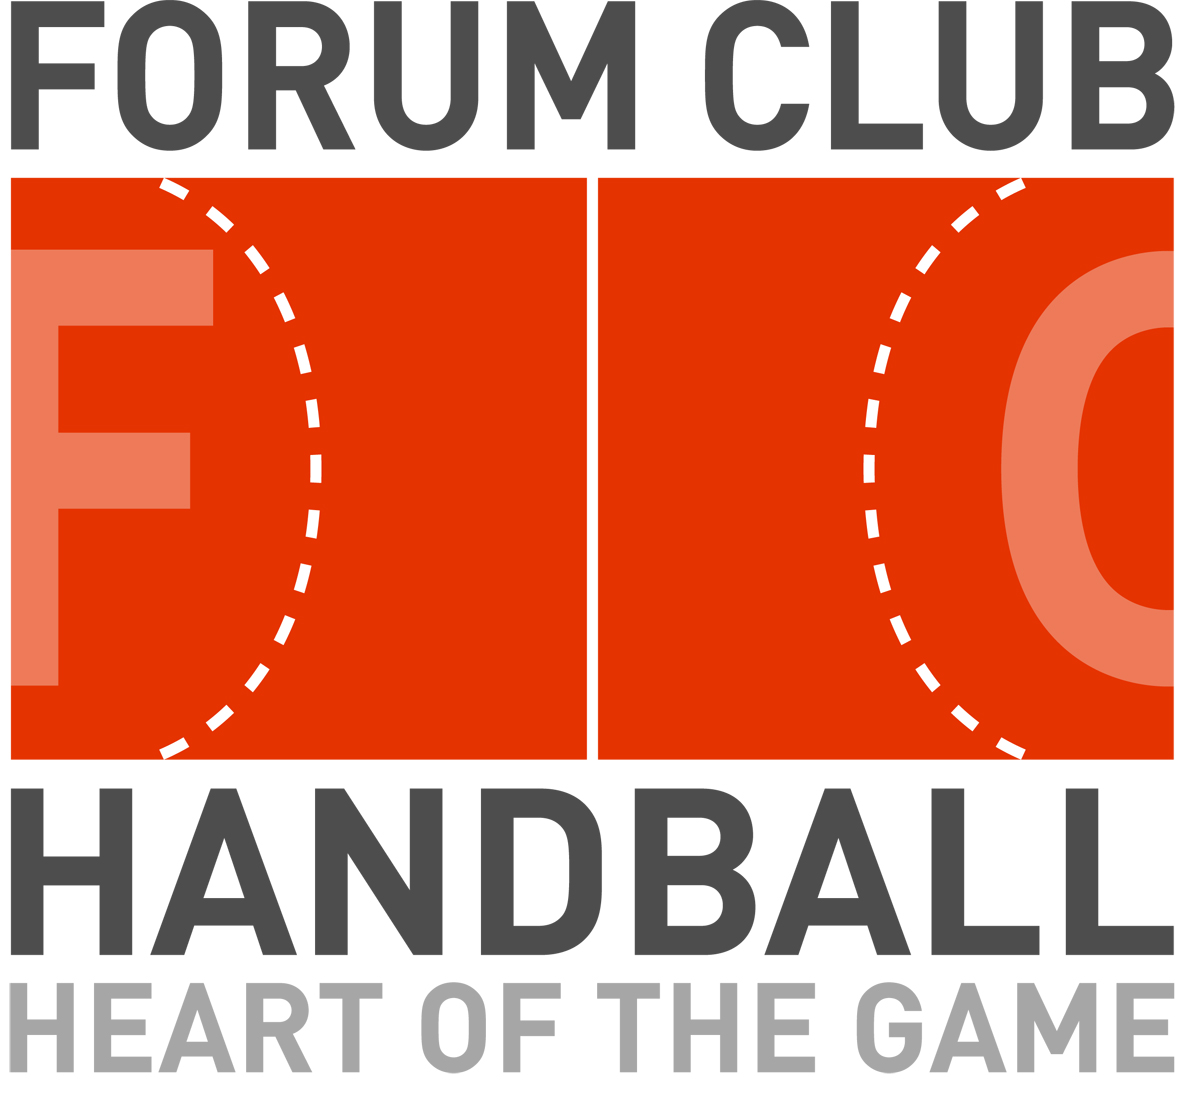 Zeekstar Tokyo joins Forum Club Handball as the first Asian team